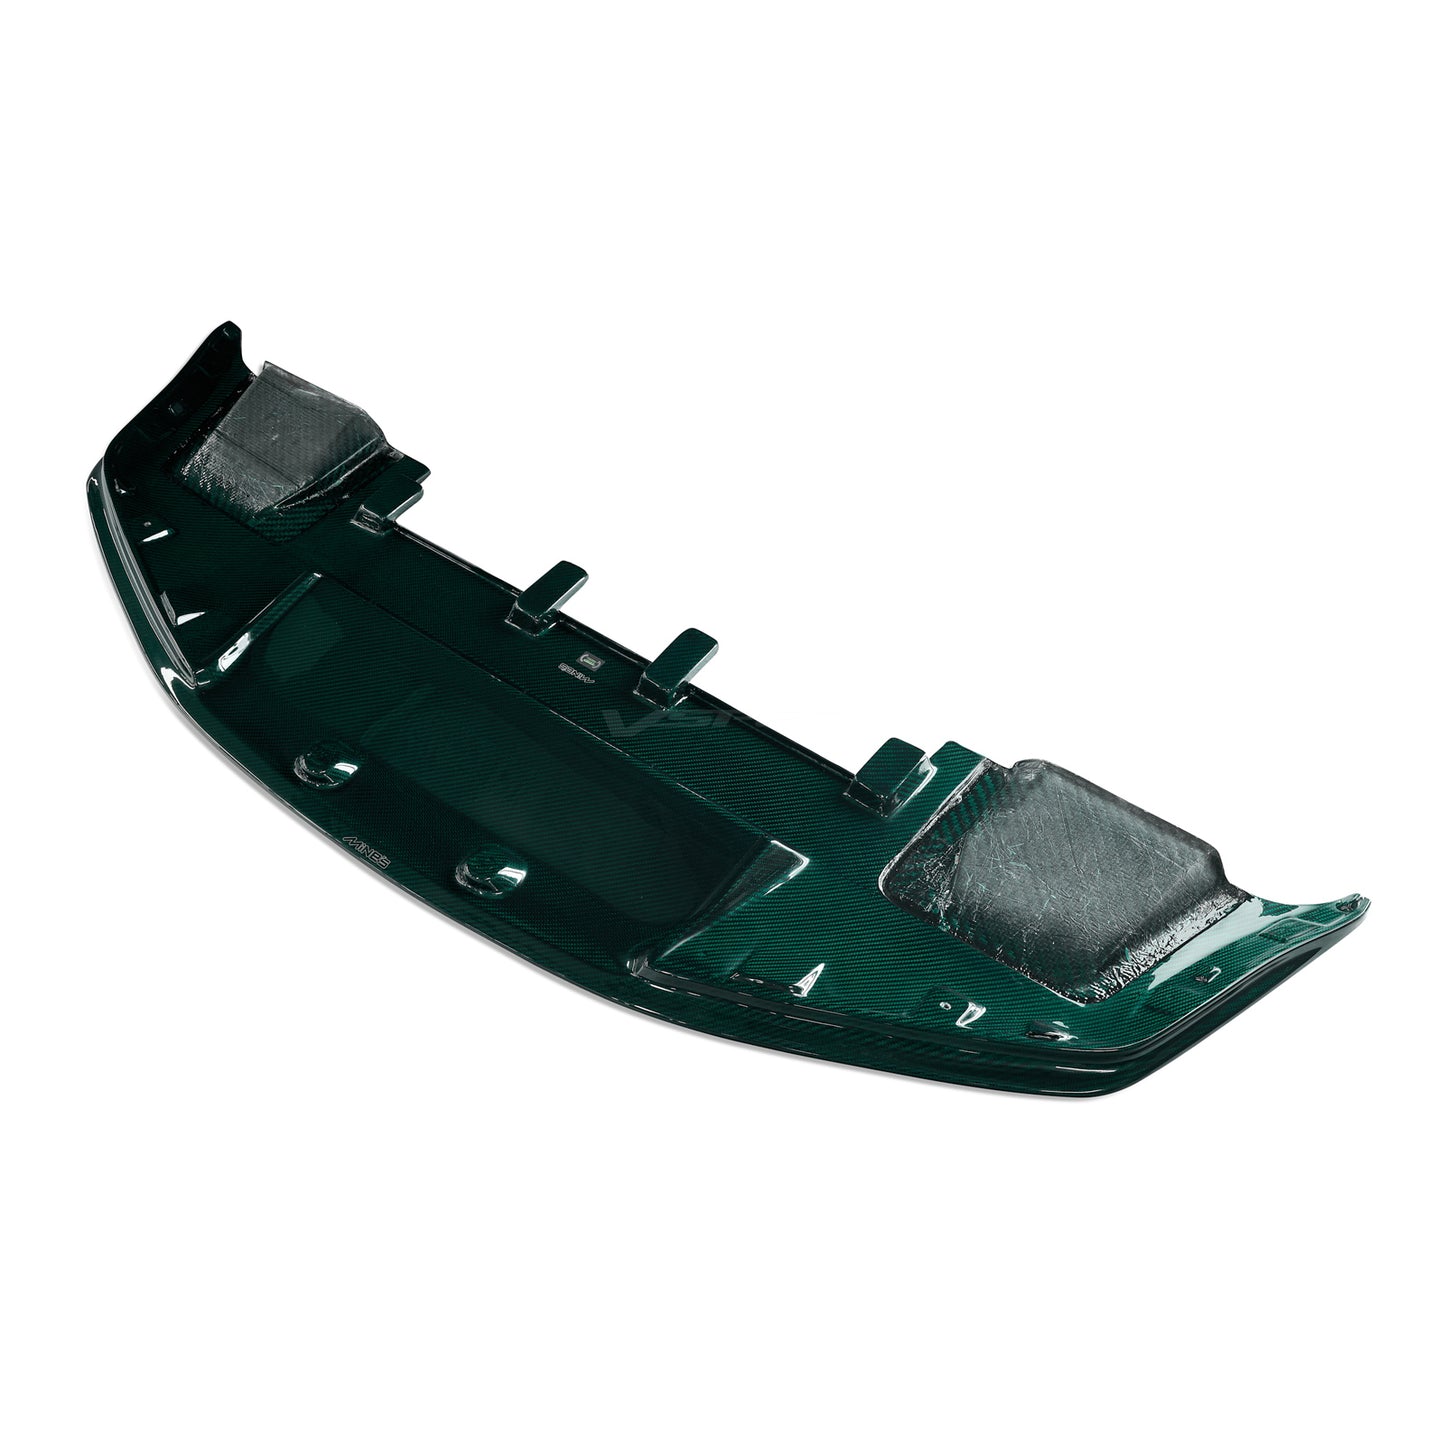 MINE'S Carbon Front Splitter for Skyline R34 BNR34 GT-R (Emerald)